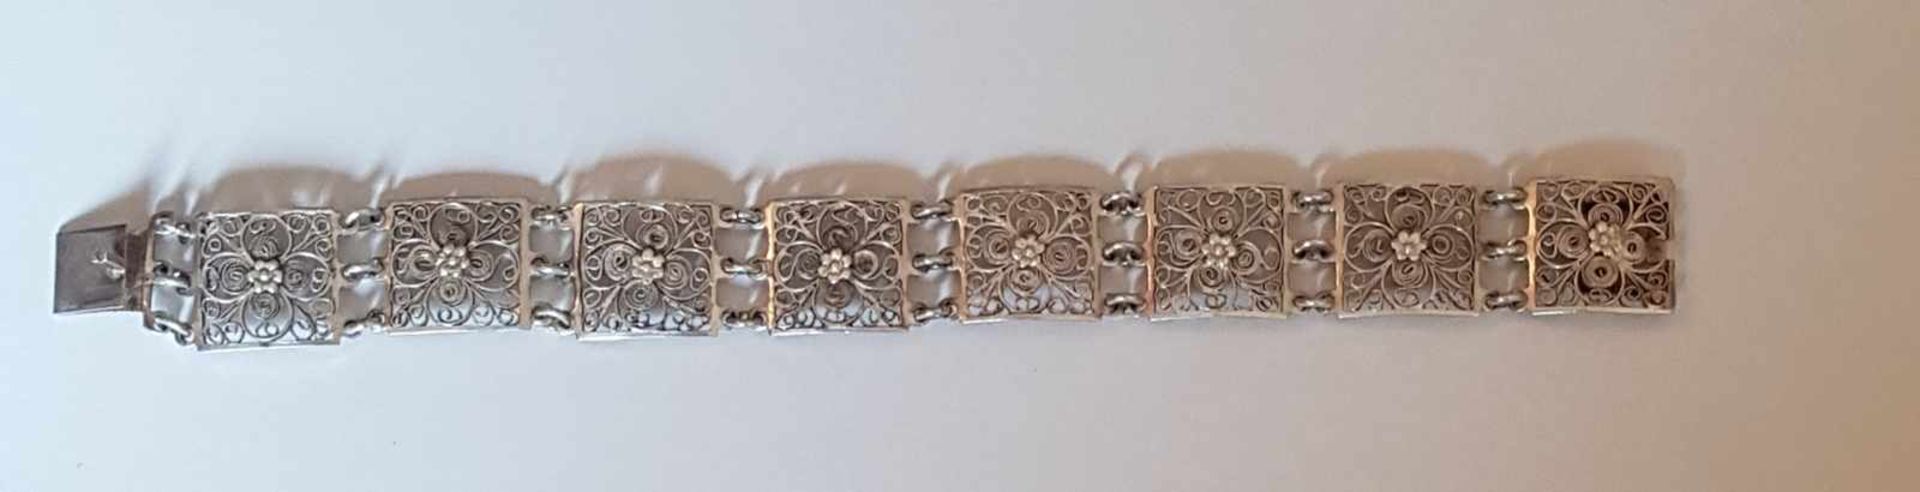 Armkette, Silber 800 , Länge 19cm , Filigranierarbeit, Steckschließe , 20,7g ,